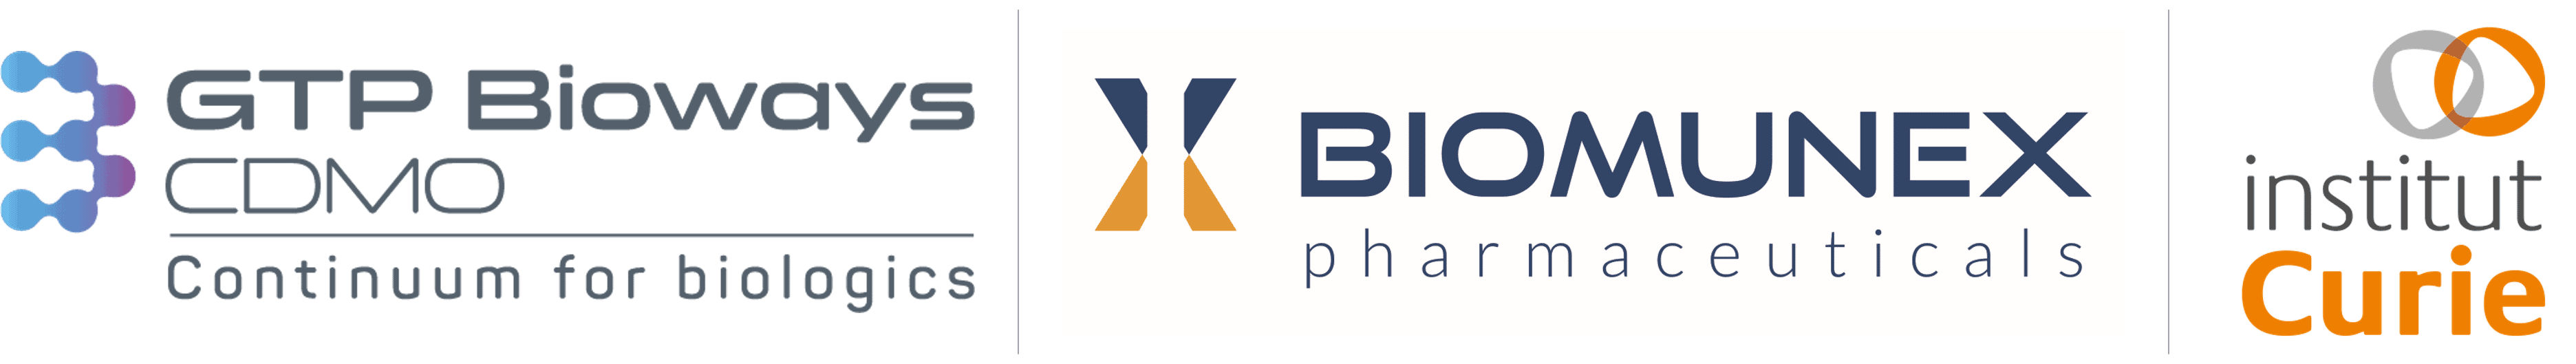 Biomunex Pharmaceuticals / GTP Bioways / Institut Curie